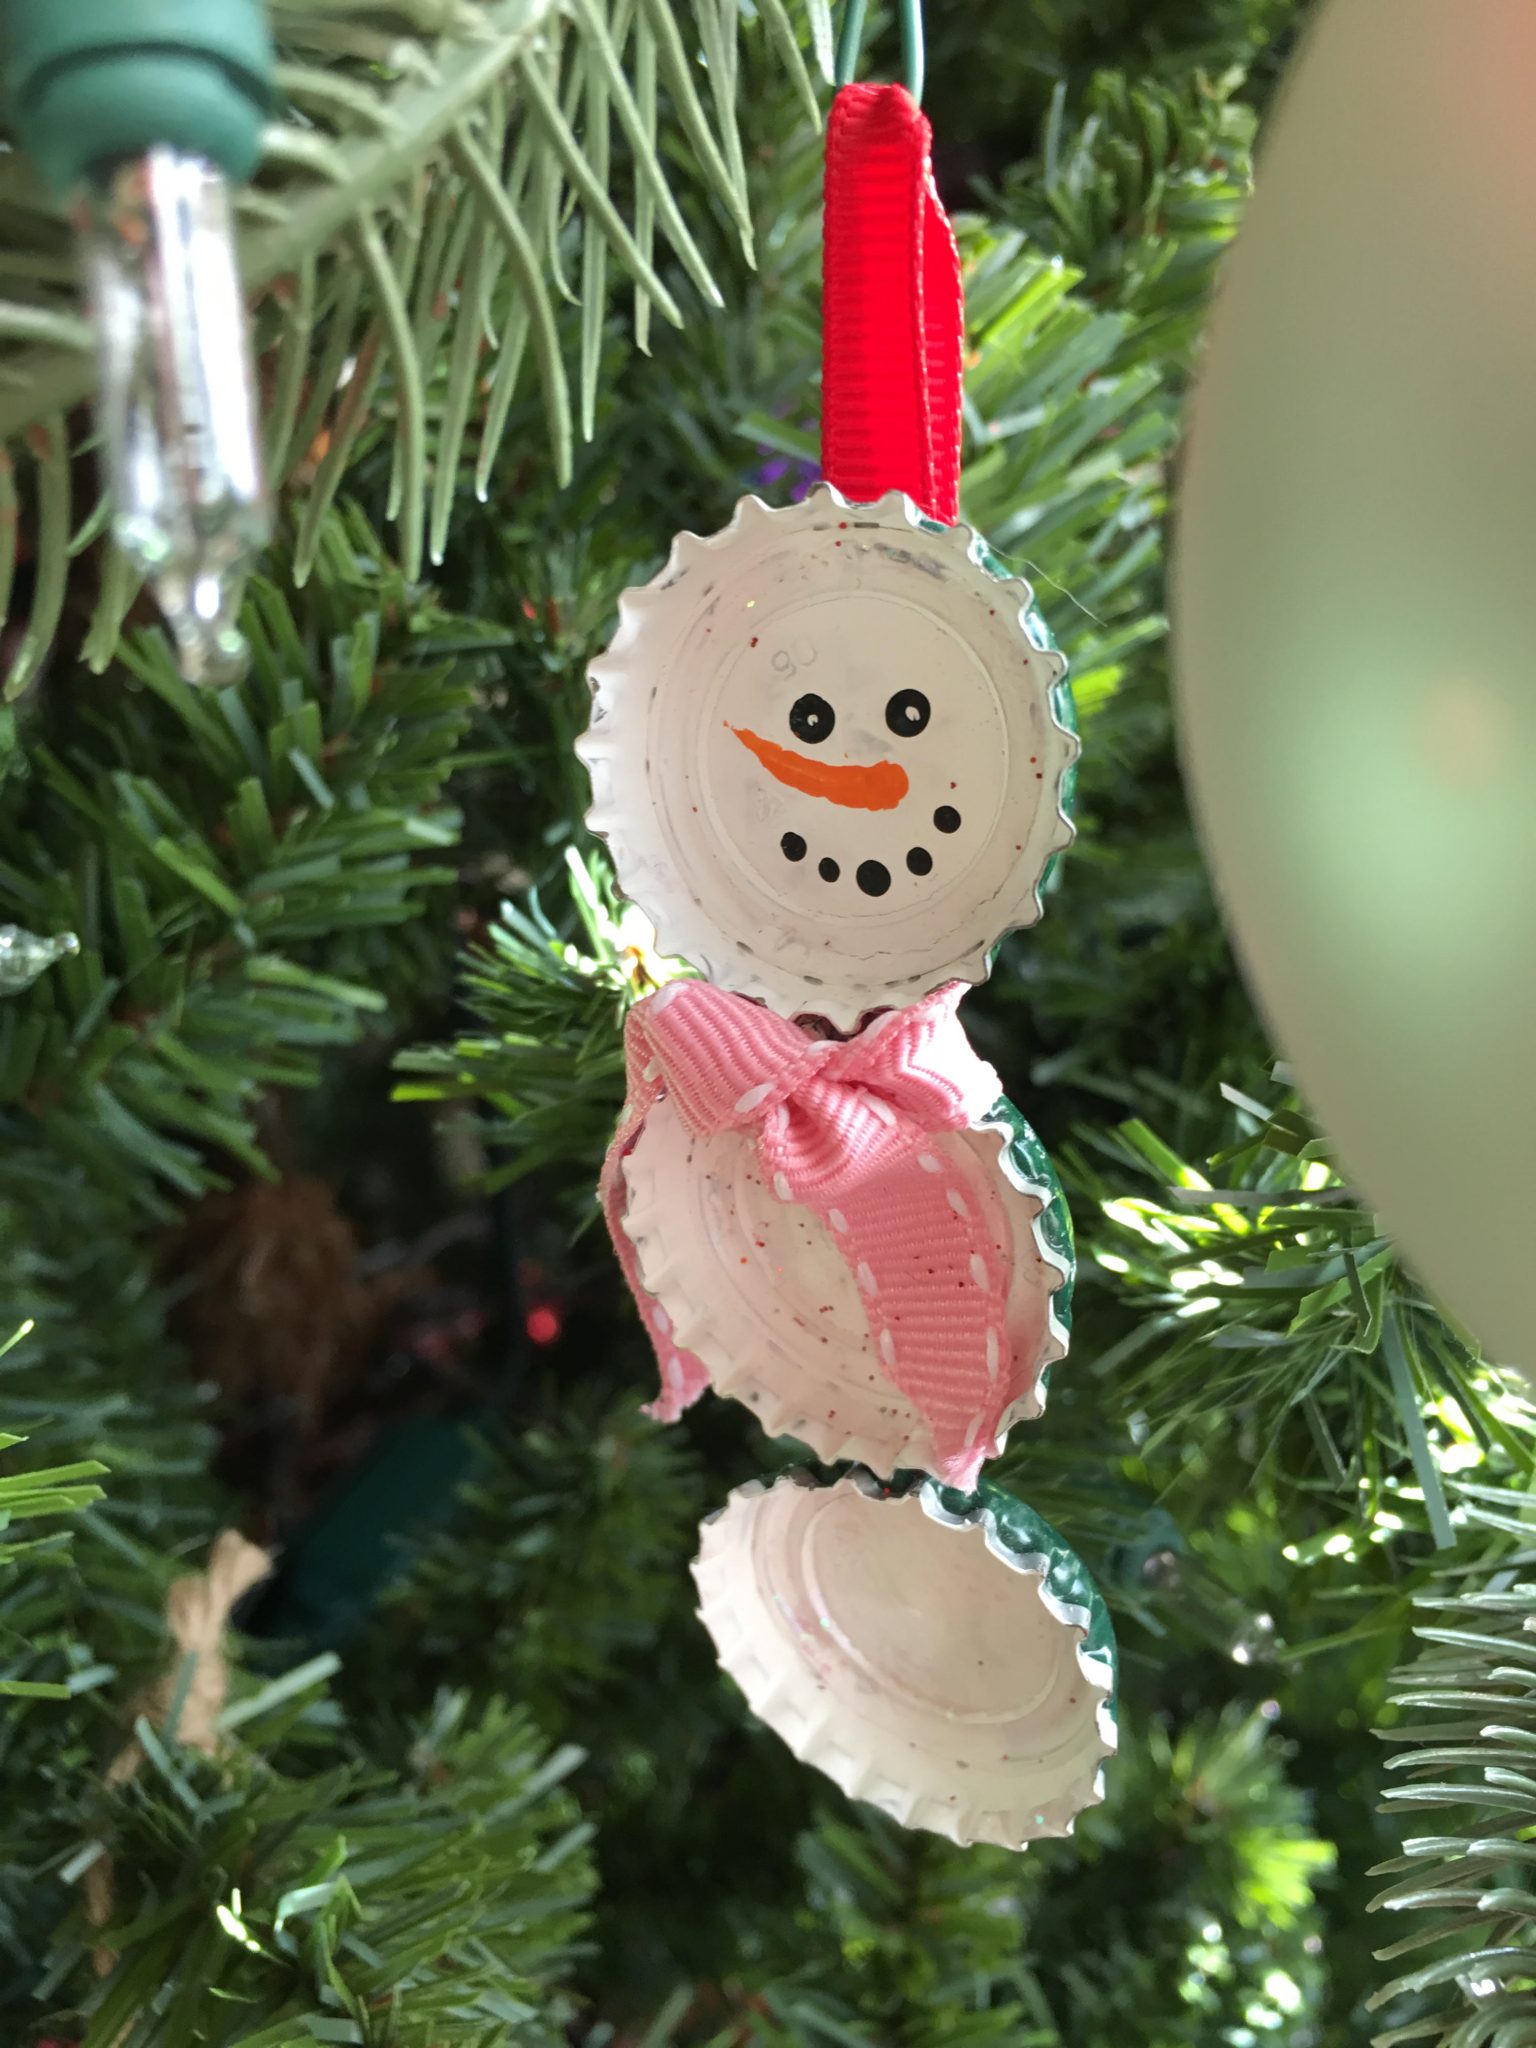 Bottlecap Snowman Ornaments